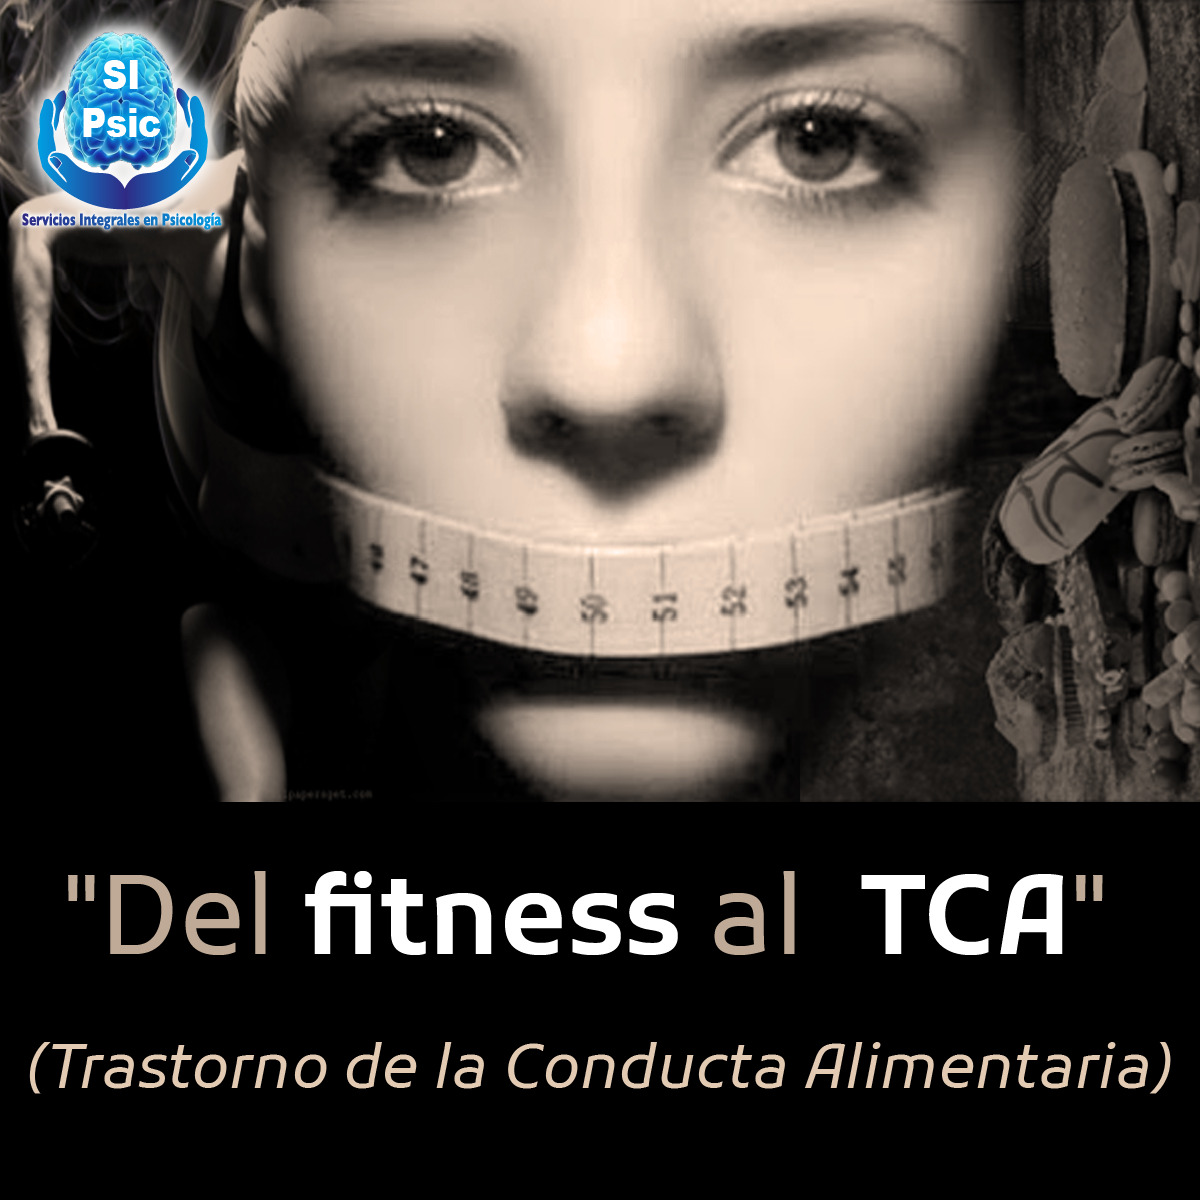 Blog 2: Del fitness al TCA